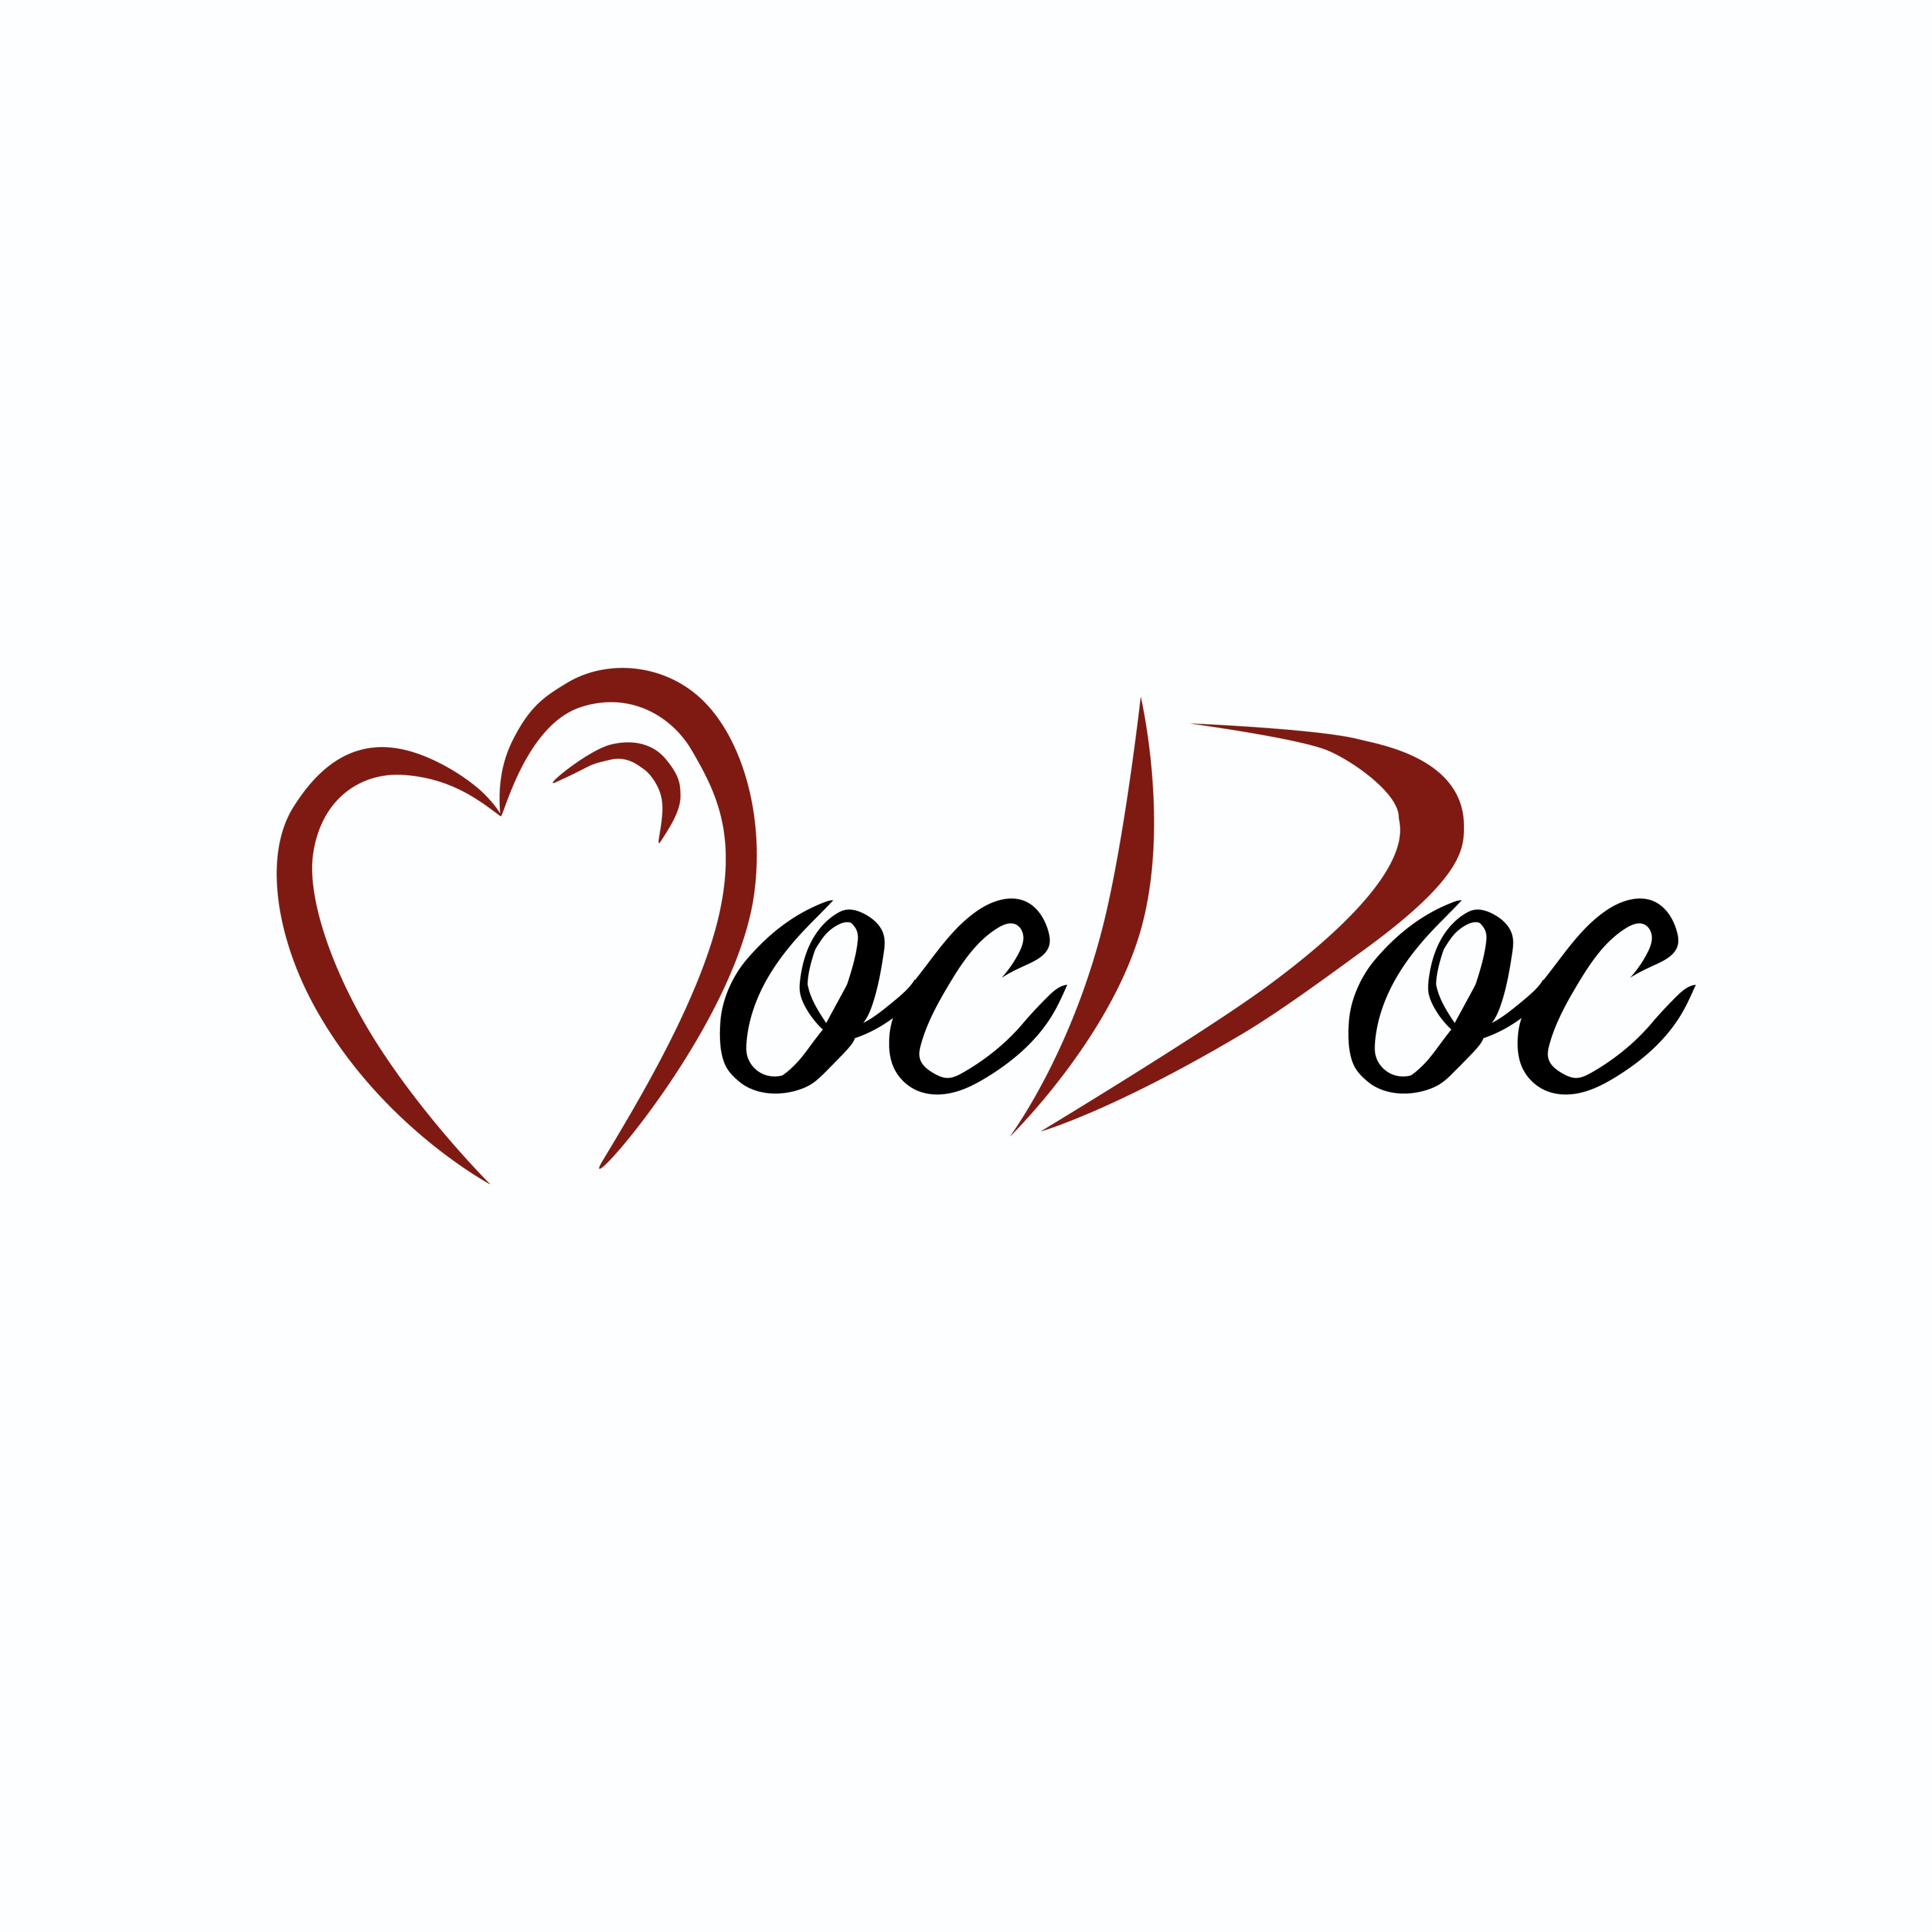 MocDoc|Clinics|Medical Services